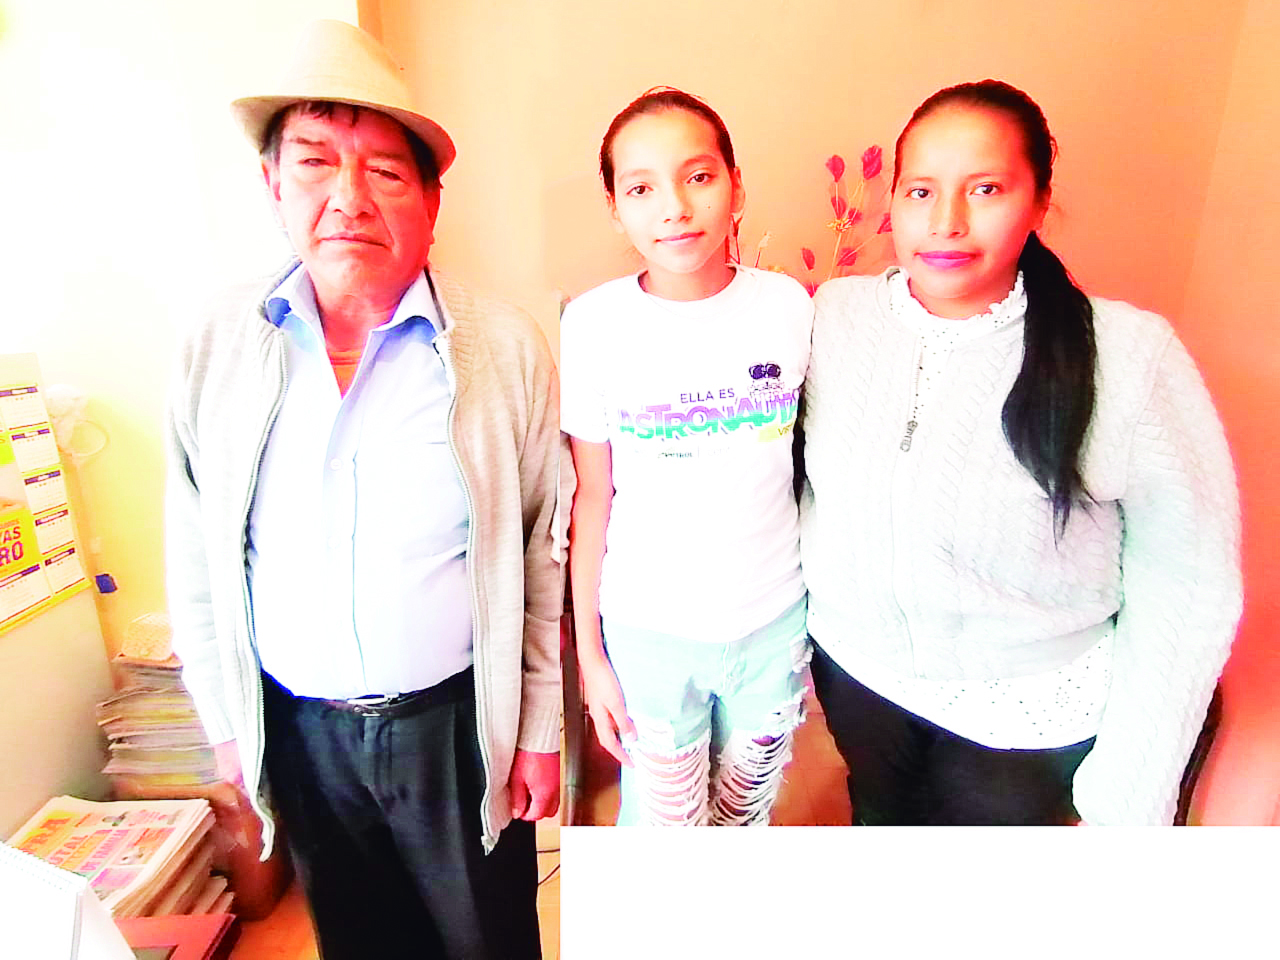 La estudiante Mayerly Vallejos Mueses acompañada por su madre Sara Mueses y su abuelo Marino Mueses.